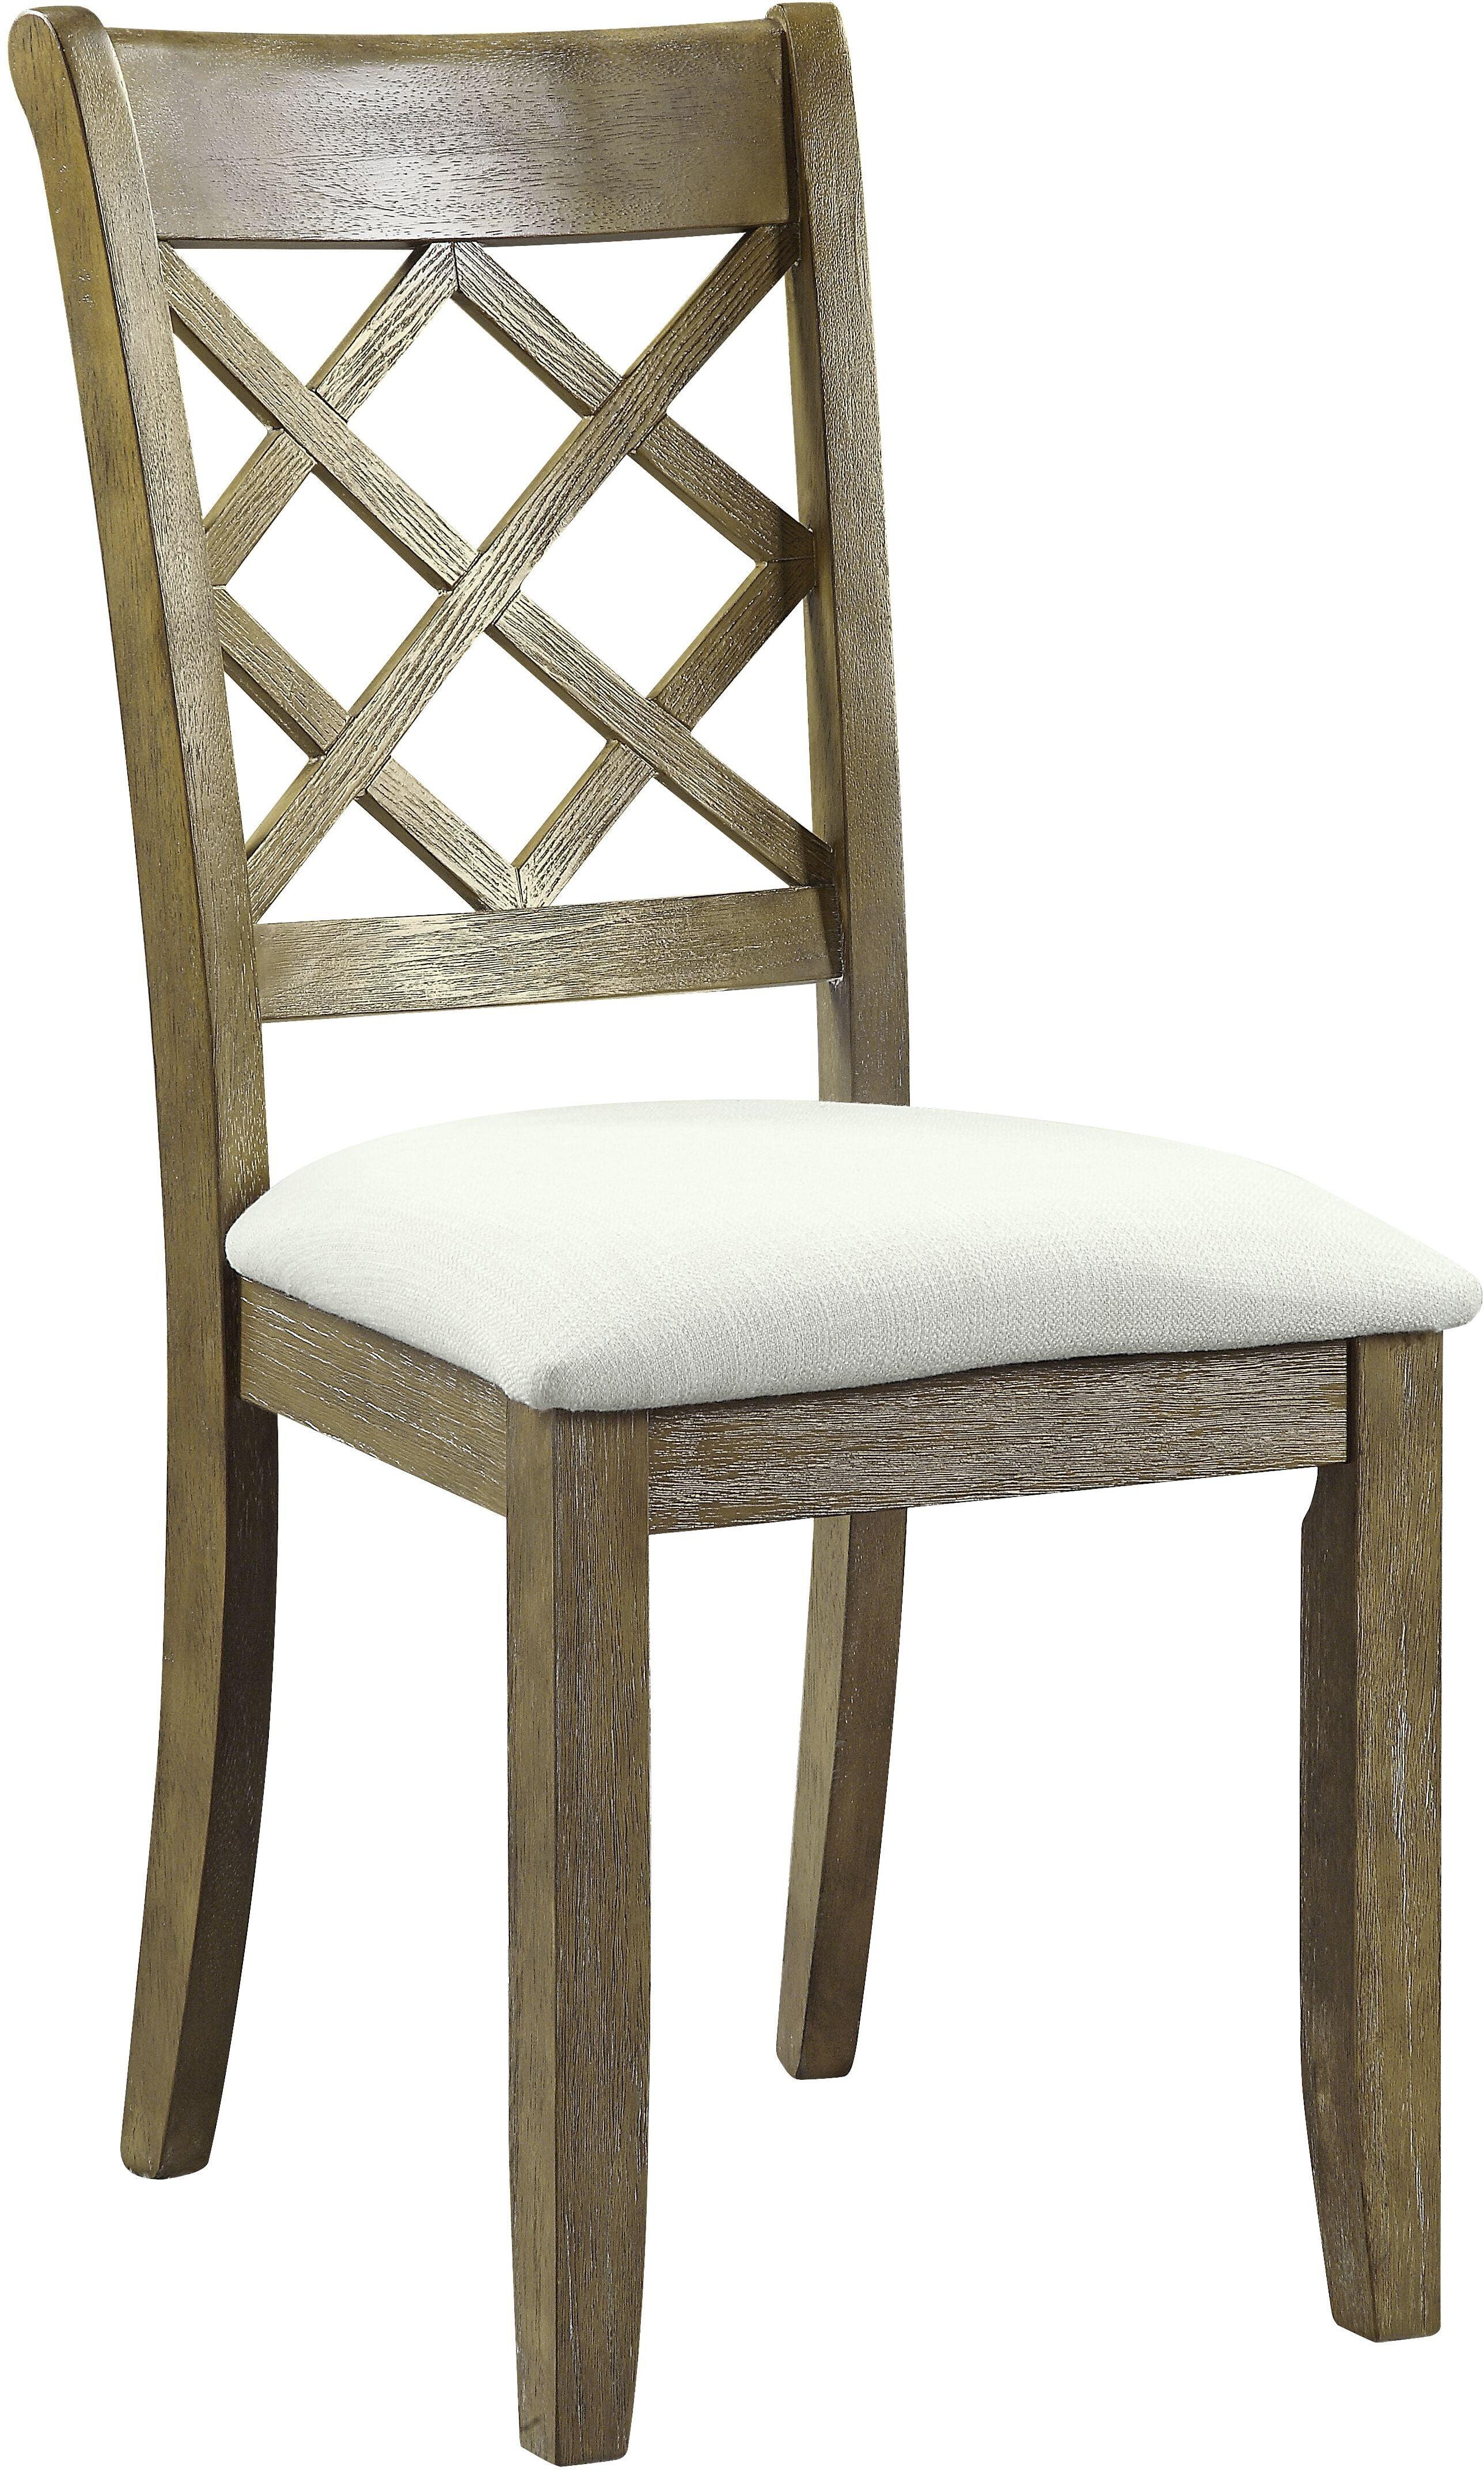 Beige Linen Upholstered Slat Side Chair in Rustic Oak - Set of 2